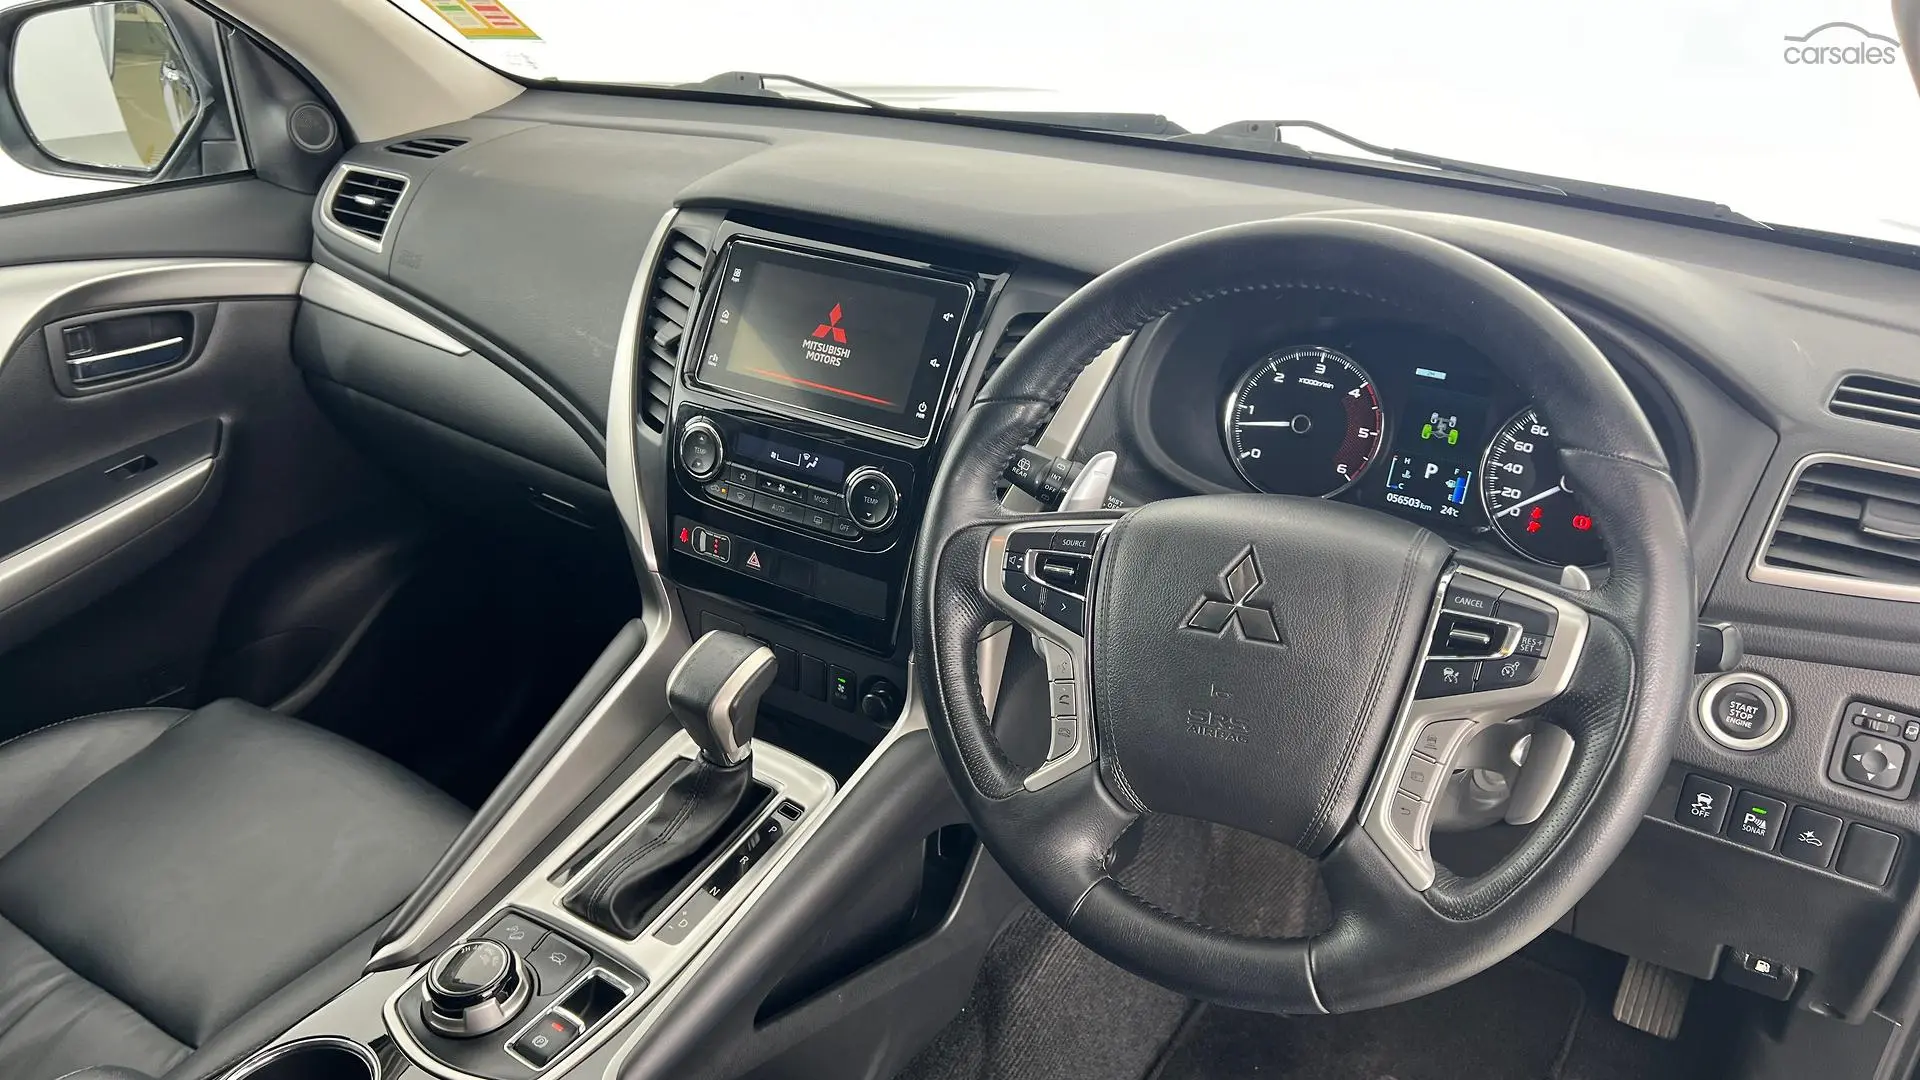 2019 Mitsubishi Pajero Sport Image 13